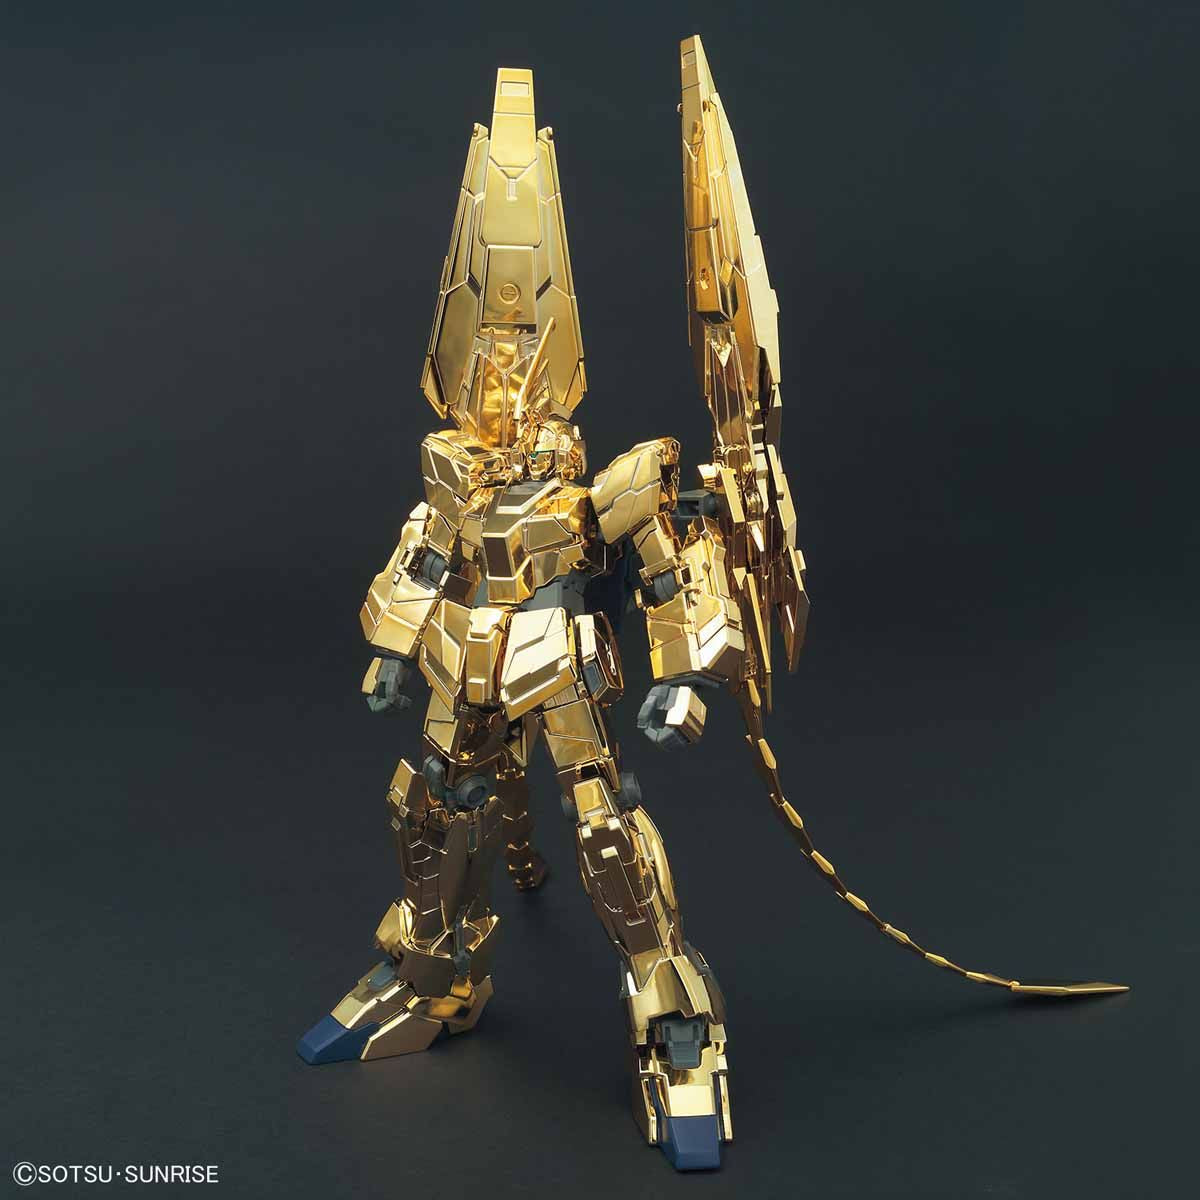 HGUC - RX-0 Unicorn Gundam 03 Phenex(Unicorn Mode) [Narrative Ver.] [GOLD COATING]